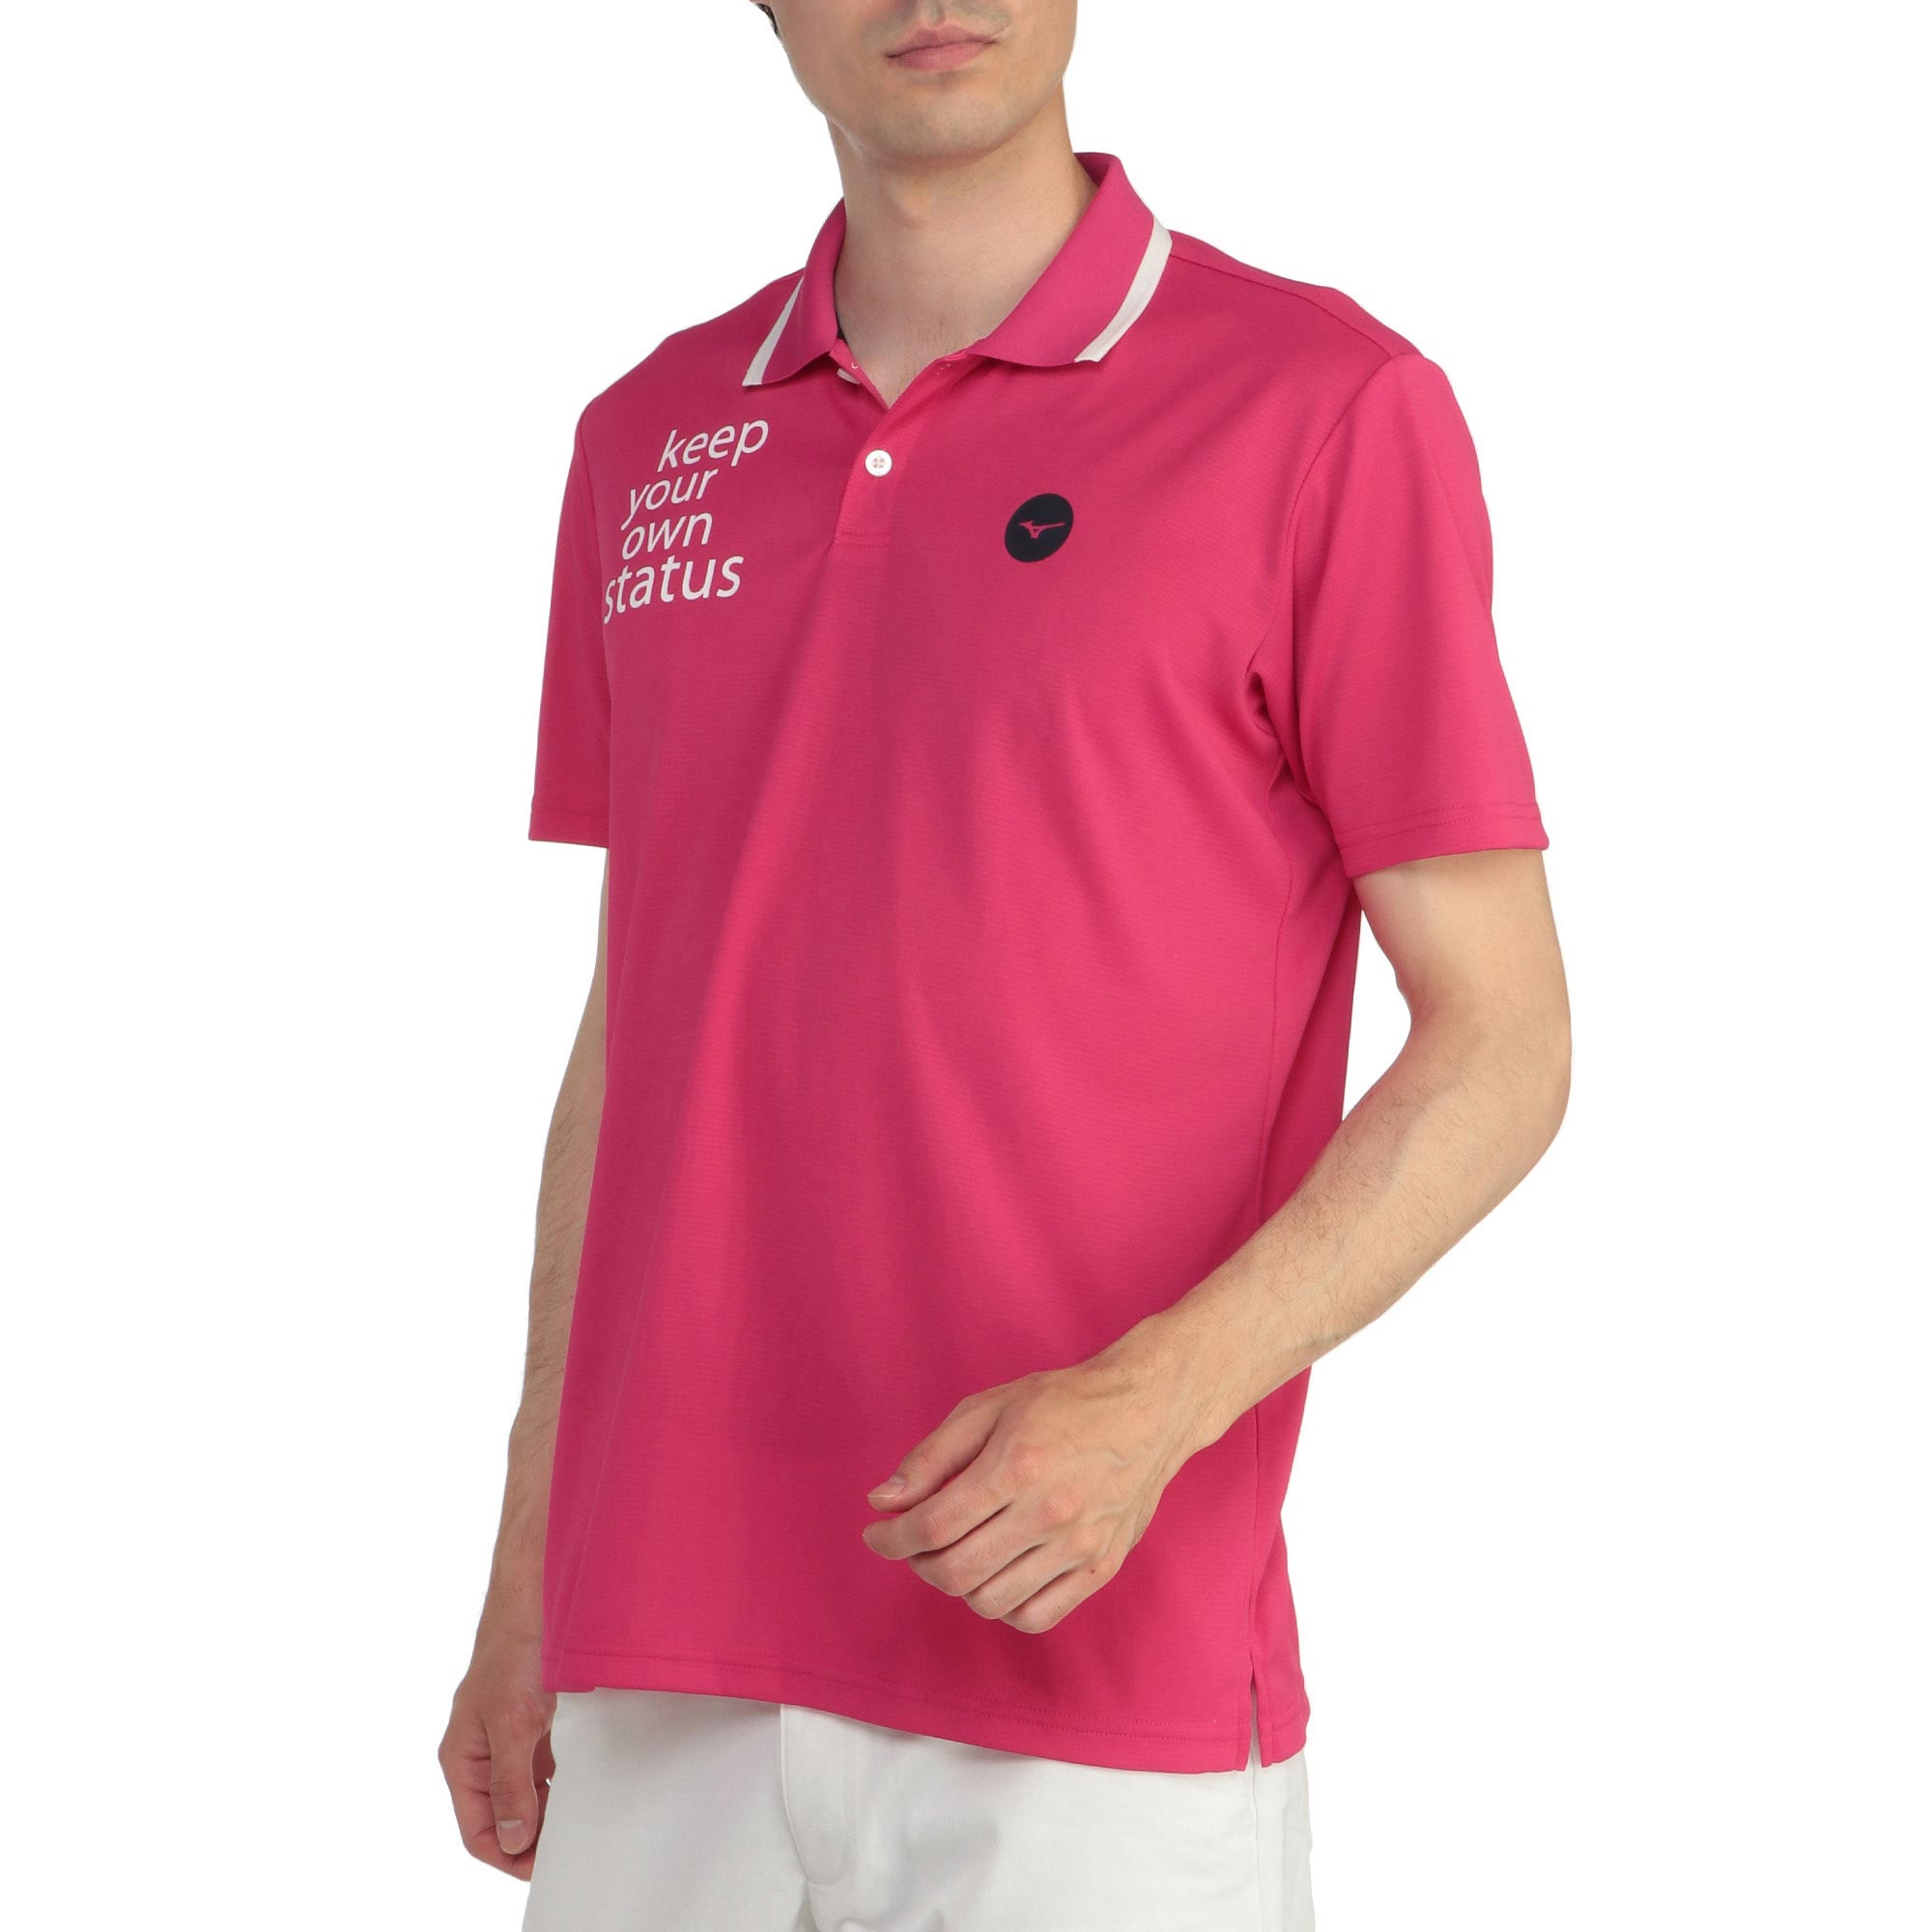 半袖ポロ衿シャツ(大きいサイズ)[メンズ]|E2JA2065|半袖シャツ|ゴルフ